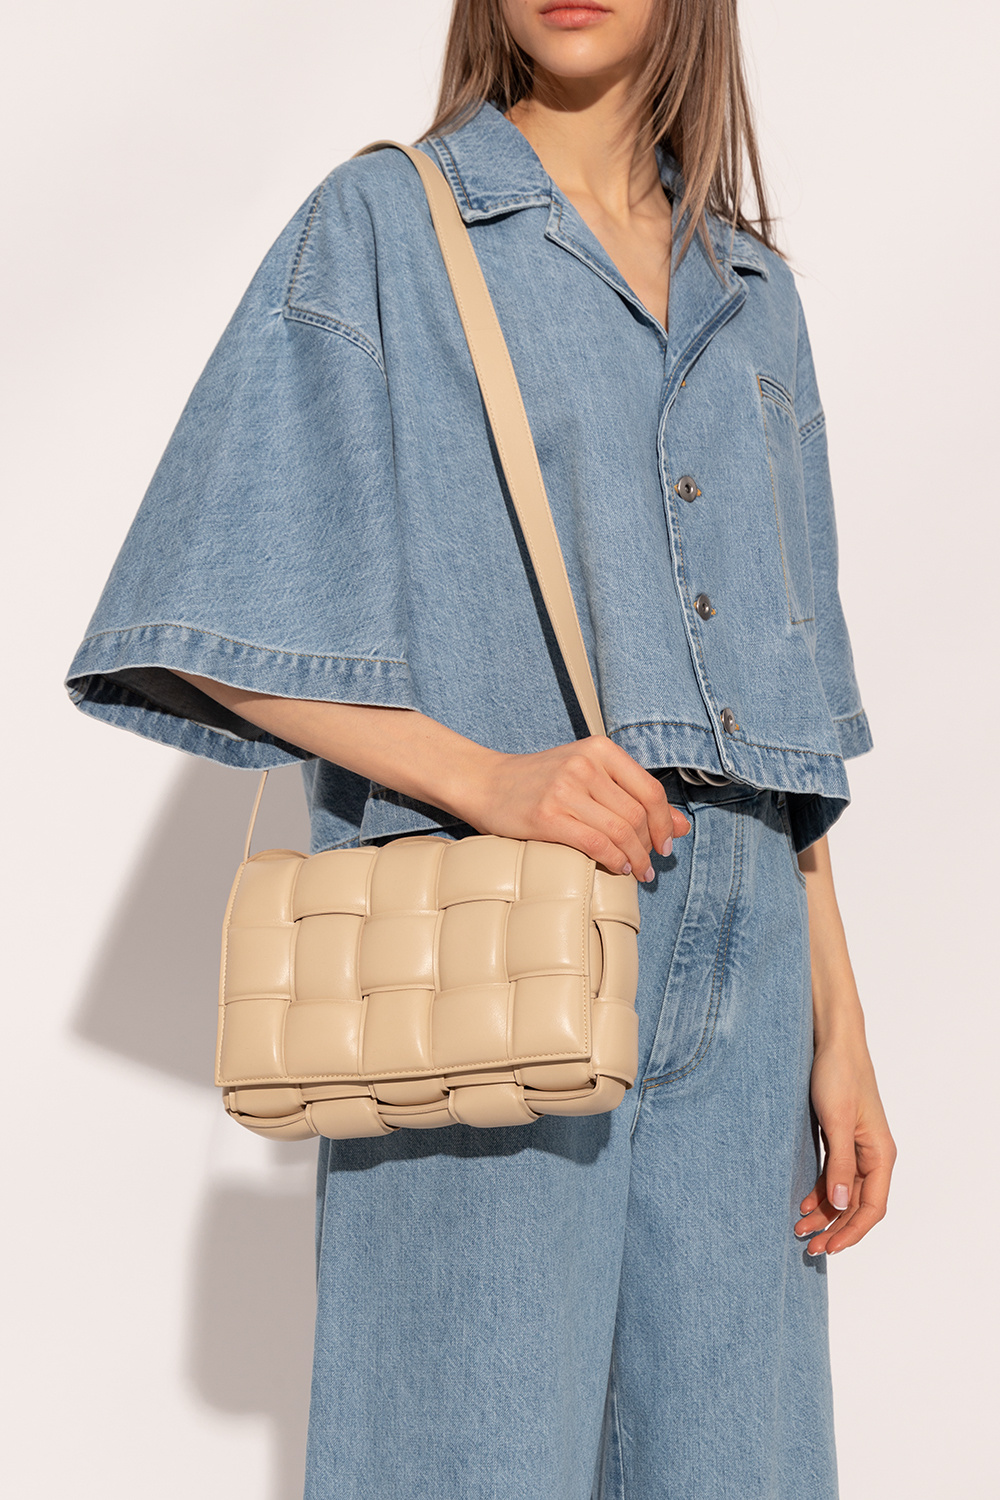 IetpShops, Bottega Veneta 'Padded Cassette Small' shoulder bag, Women's  Bags